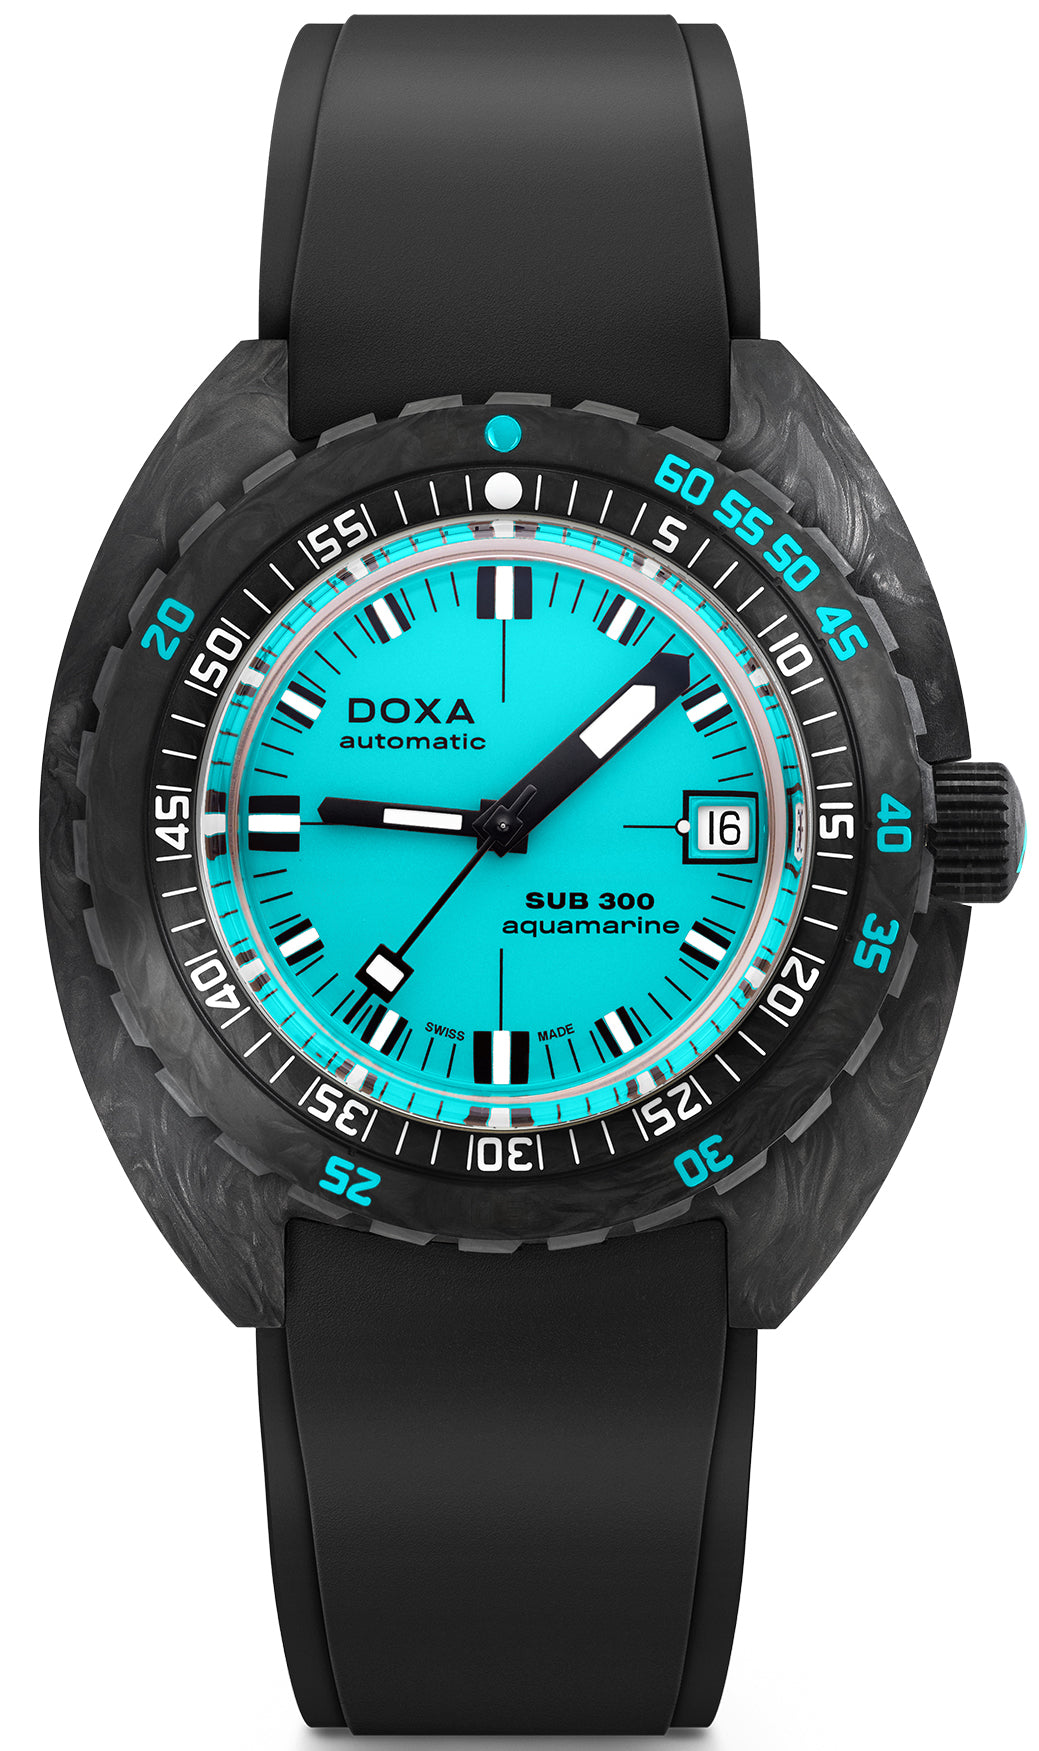 Photos - Wrist Watch DOXA Watch SUB 300 Carbon COSC Aquamarine Rubber - Blue DOX-029 